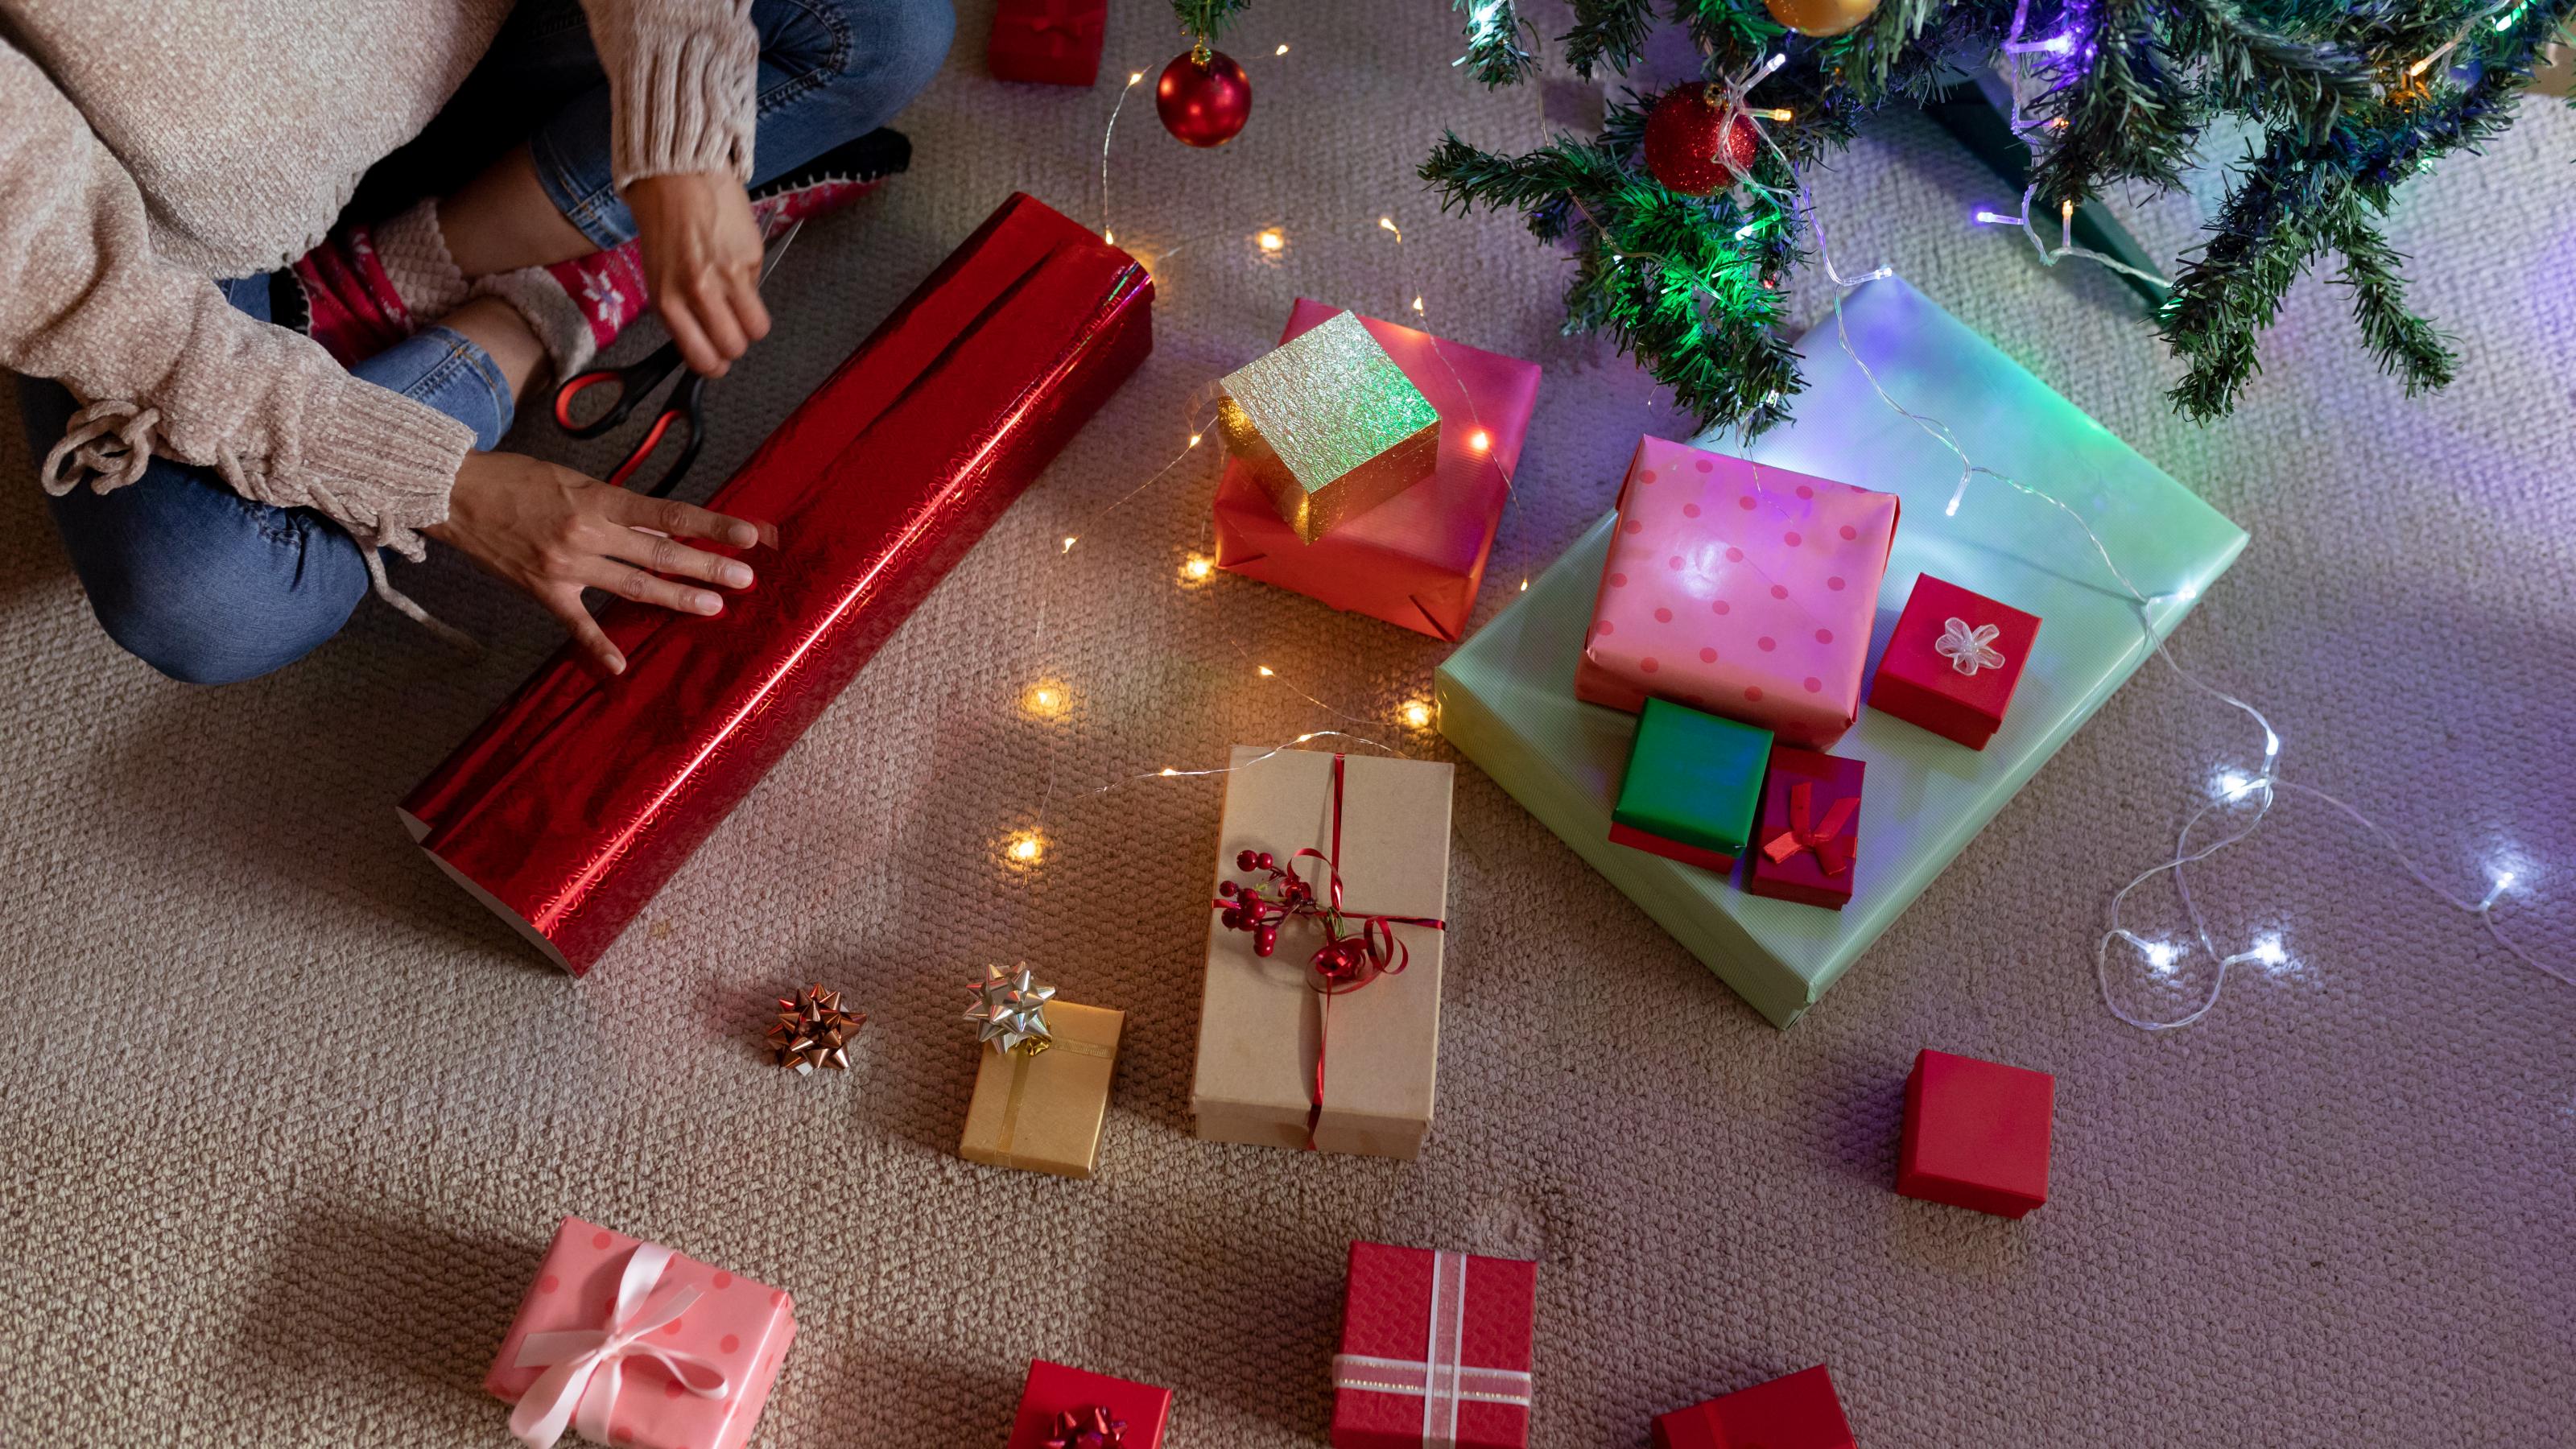 Eine Frau sitzt im Schneidersitz auf dem Boden und verpackt ein Geschenk in rotes Geschenkpapier. Vor ihr auf dem Boden liegen bereits fertig verpackte Geschenke.